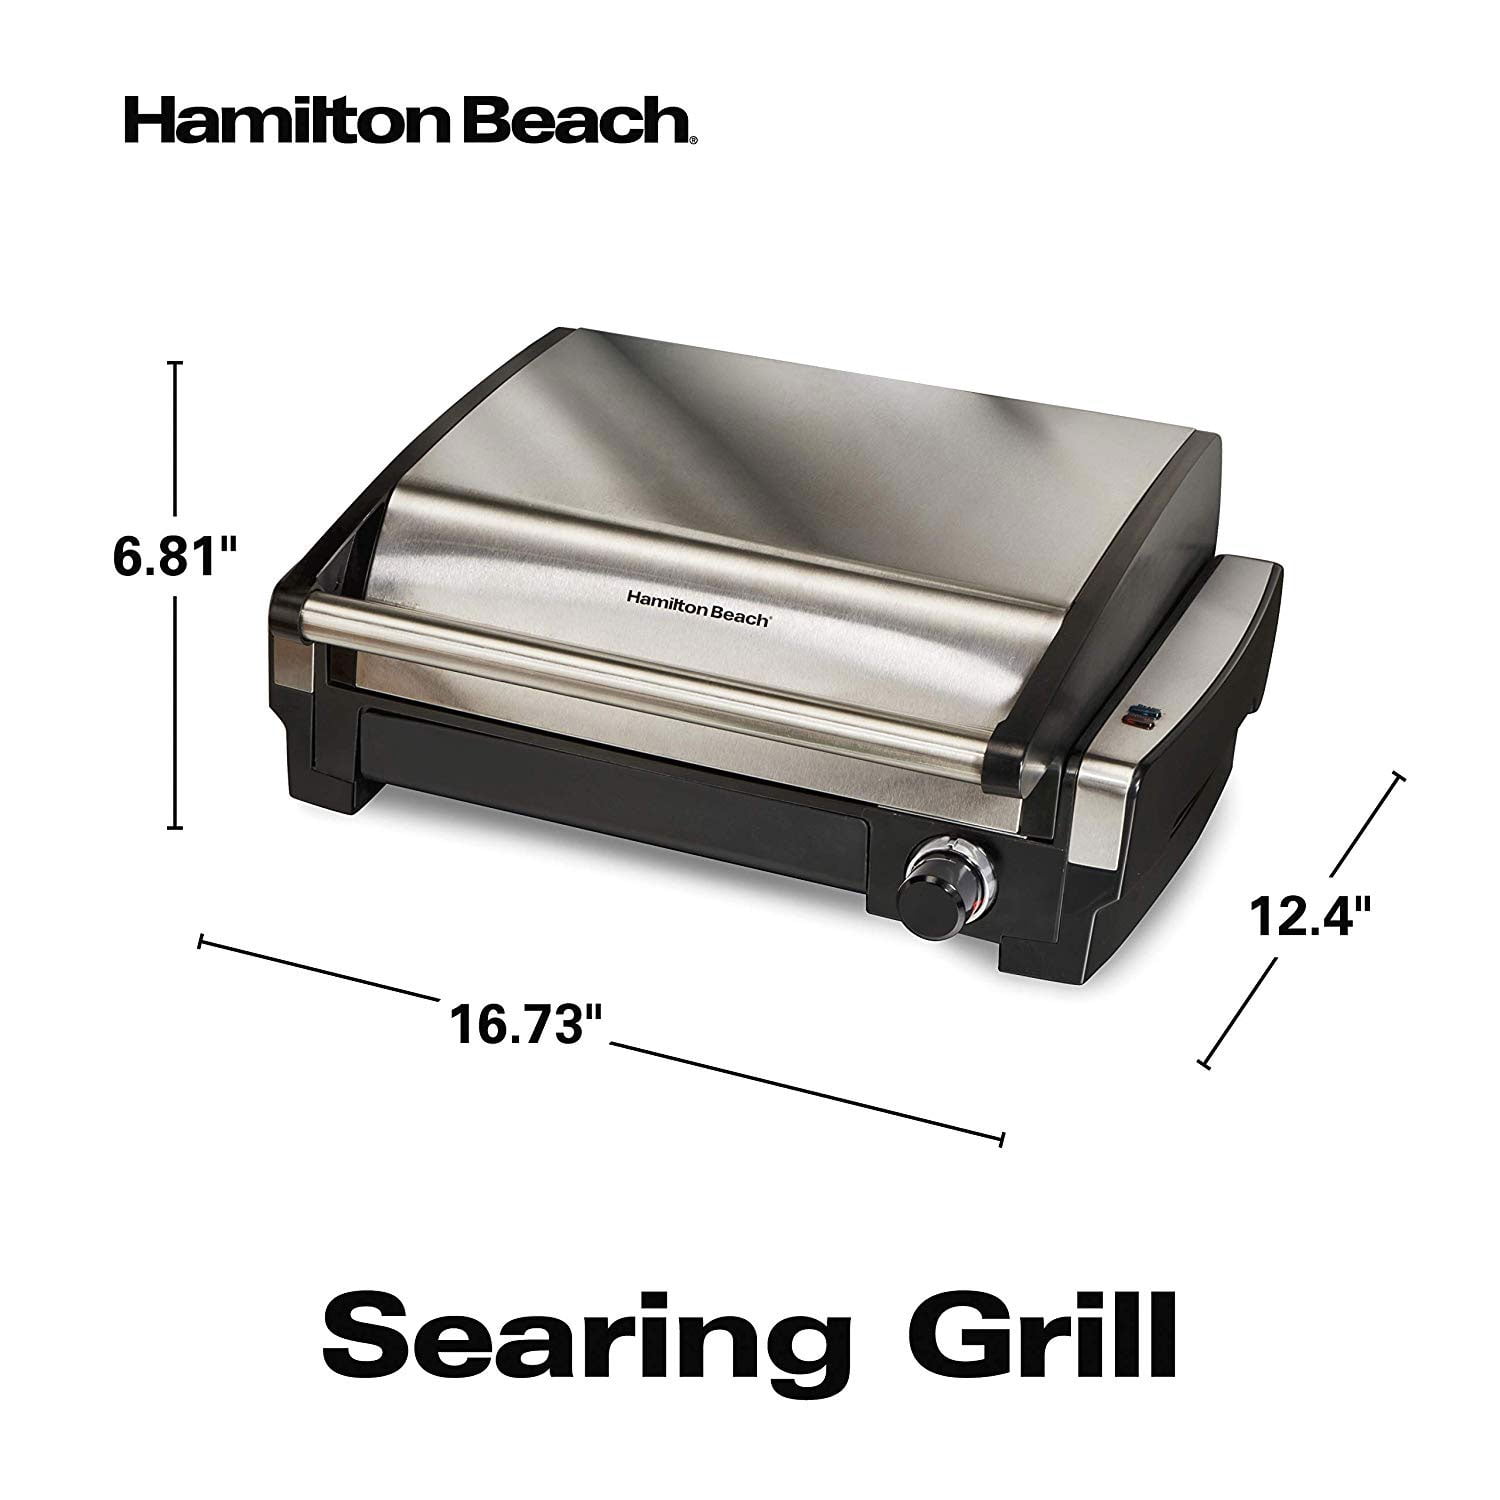 Hamilton Beach - Countertop Indoor Grill - Gray, 25370